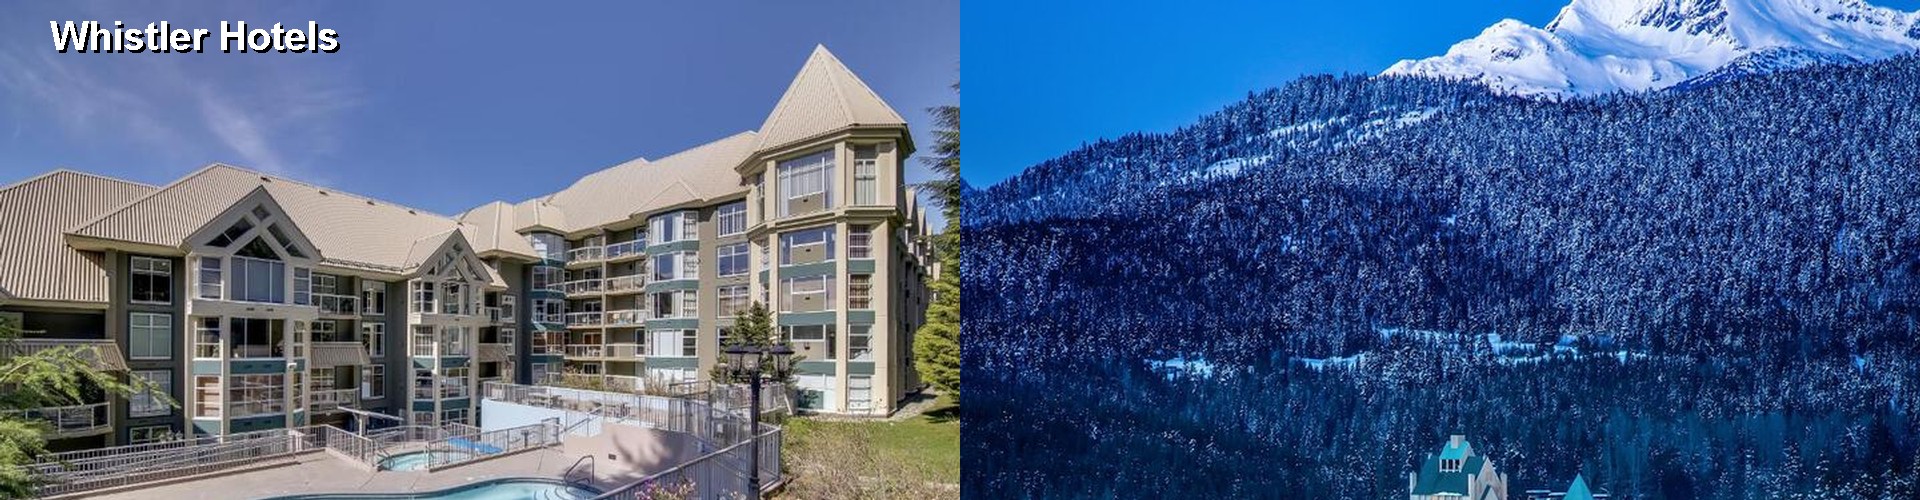 5 Best Hotels near Whistler